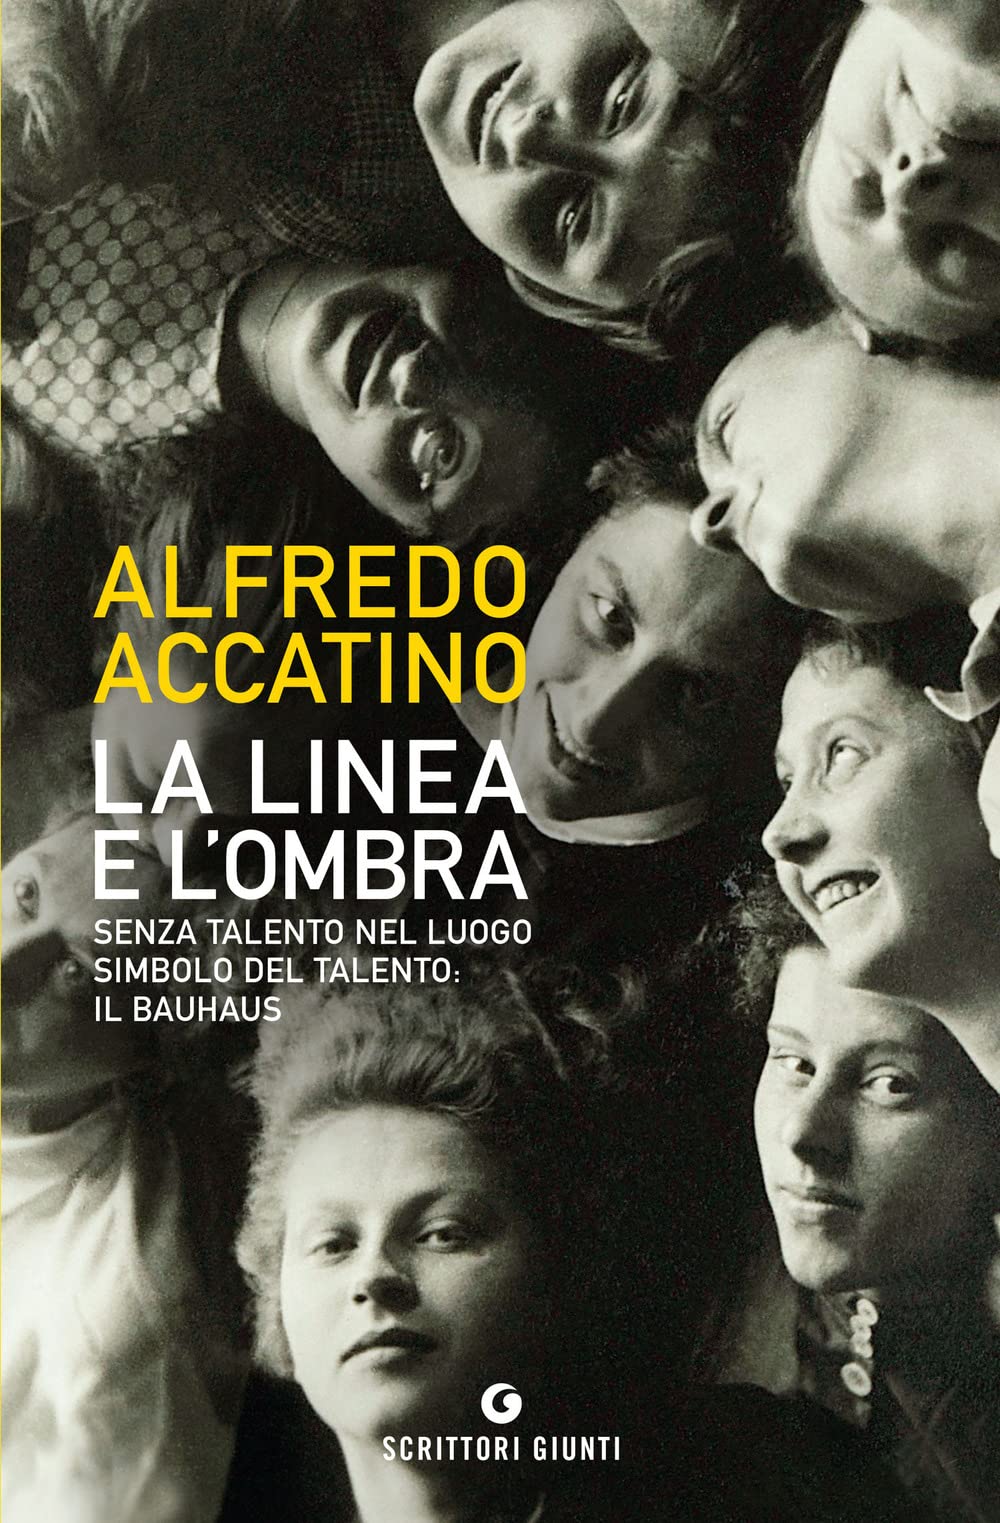 Alfredo Accatino – La linea e l'ombra (Giunti, Milano 2022)